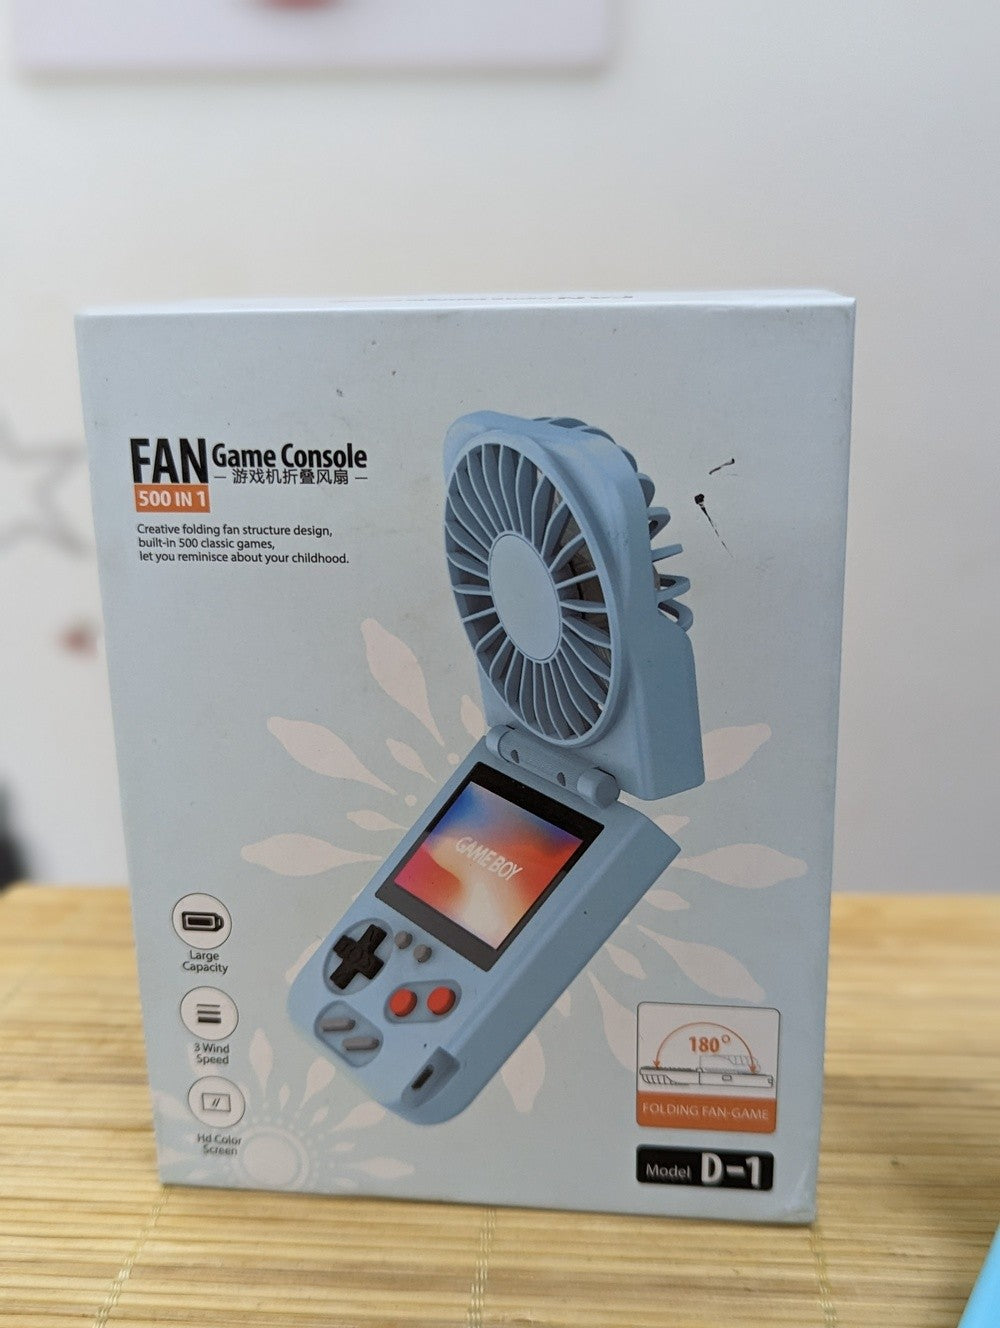 Game Console Fan 500 in 1